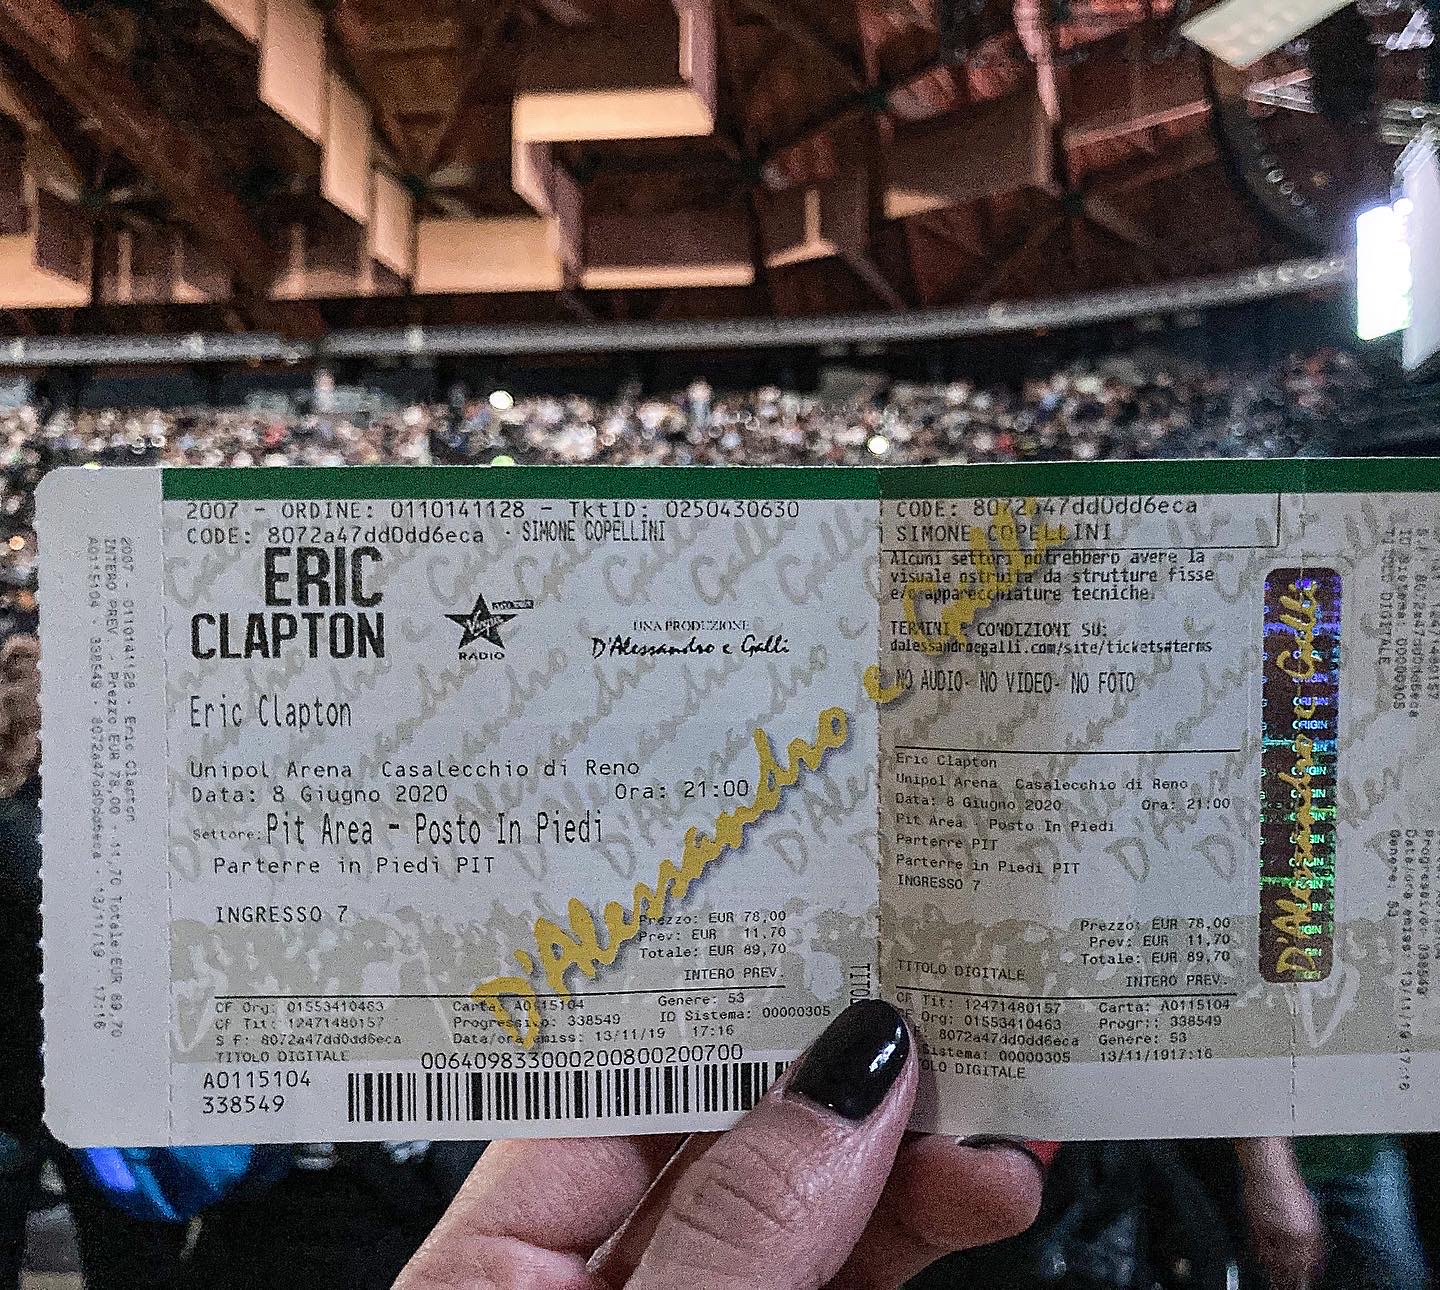 Bigliettoconcerto Eric Clapton - Unipol arena Bologna